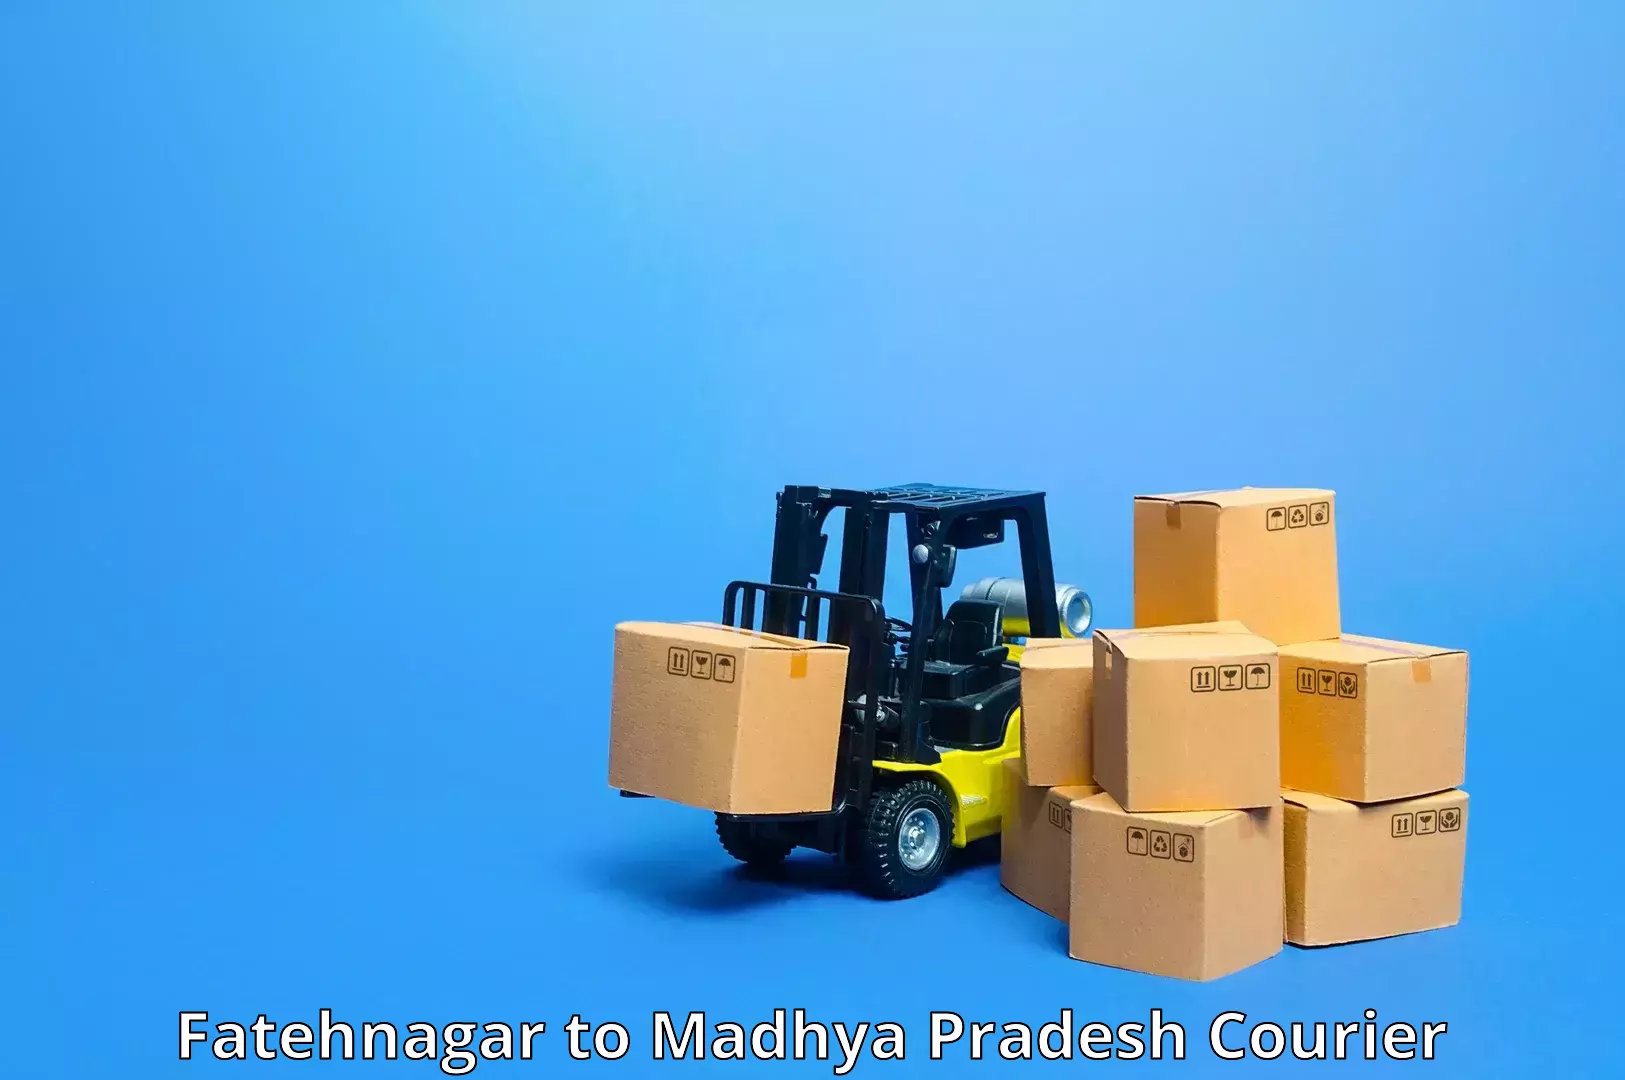 24-hour courier service Fatehnagar to Burhanpur